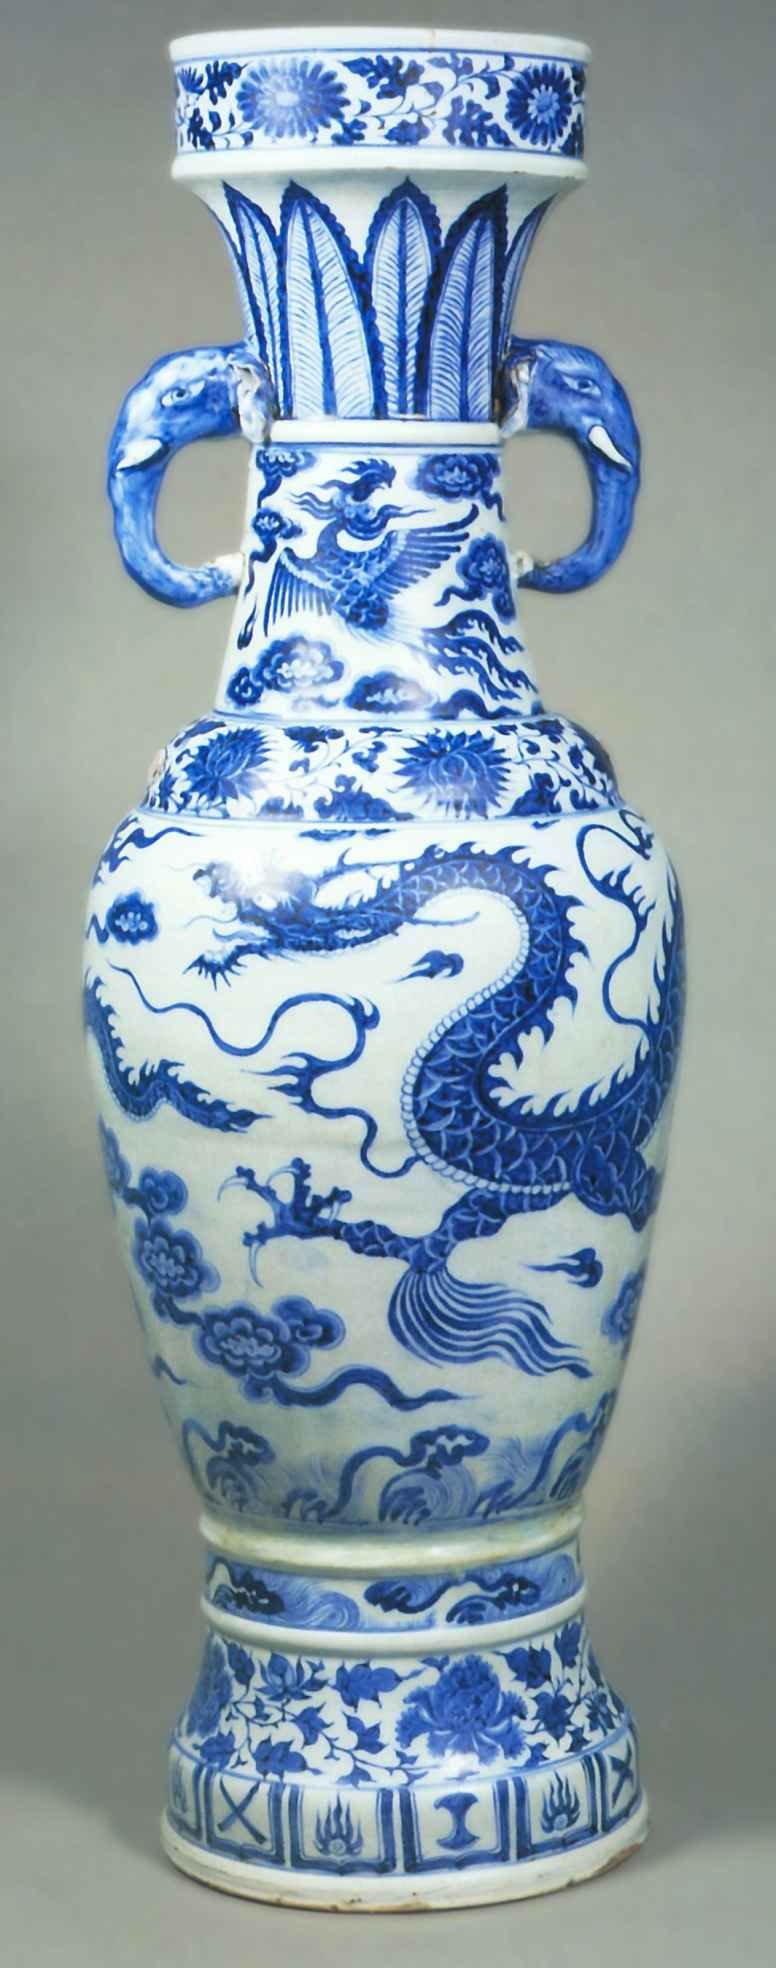 Храмовая ваза с изображением драконов среди облаков <br>1351 г. <br>Фарфор, подглазурная роспись <br>Лондон, Фонд китайского искусства 